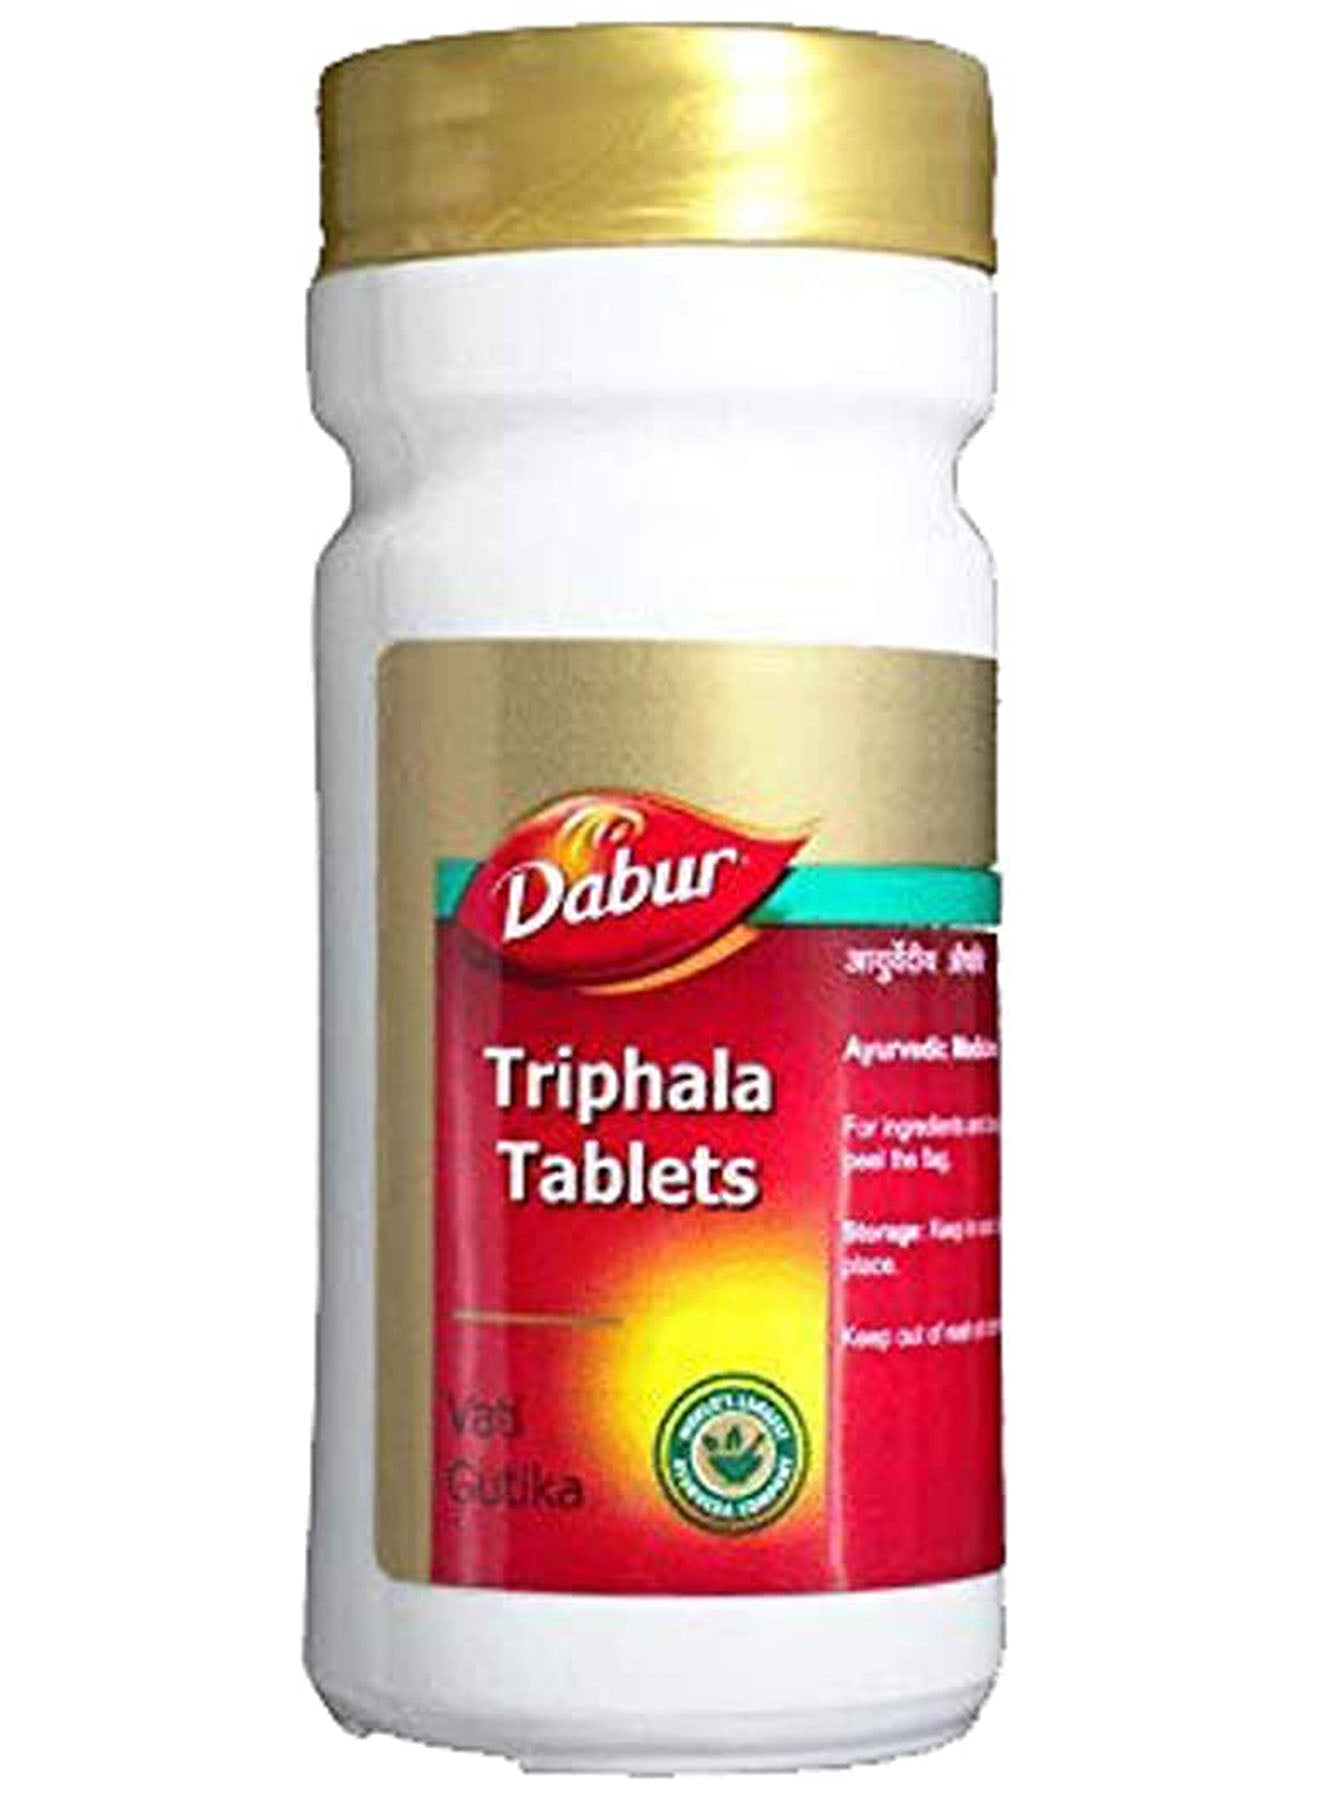 Dabur Triphala Tablet  120 g  60 tablets Value Pack of 2 